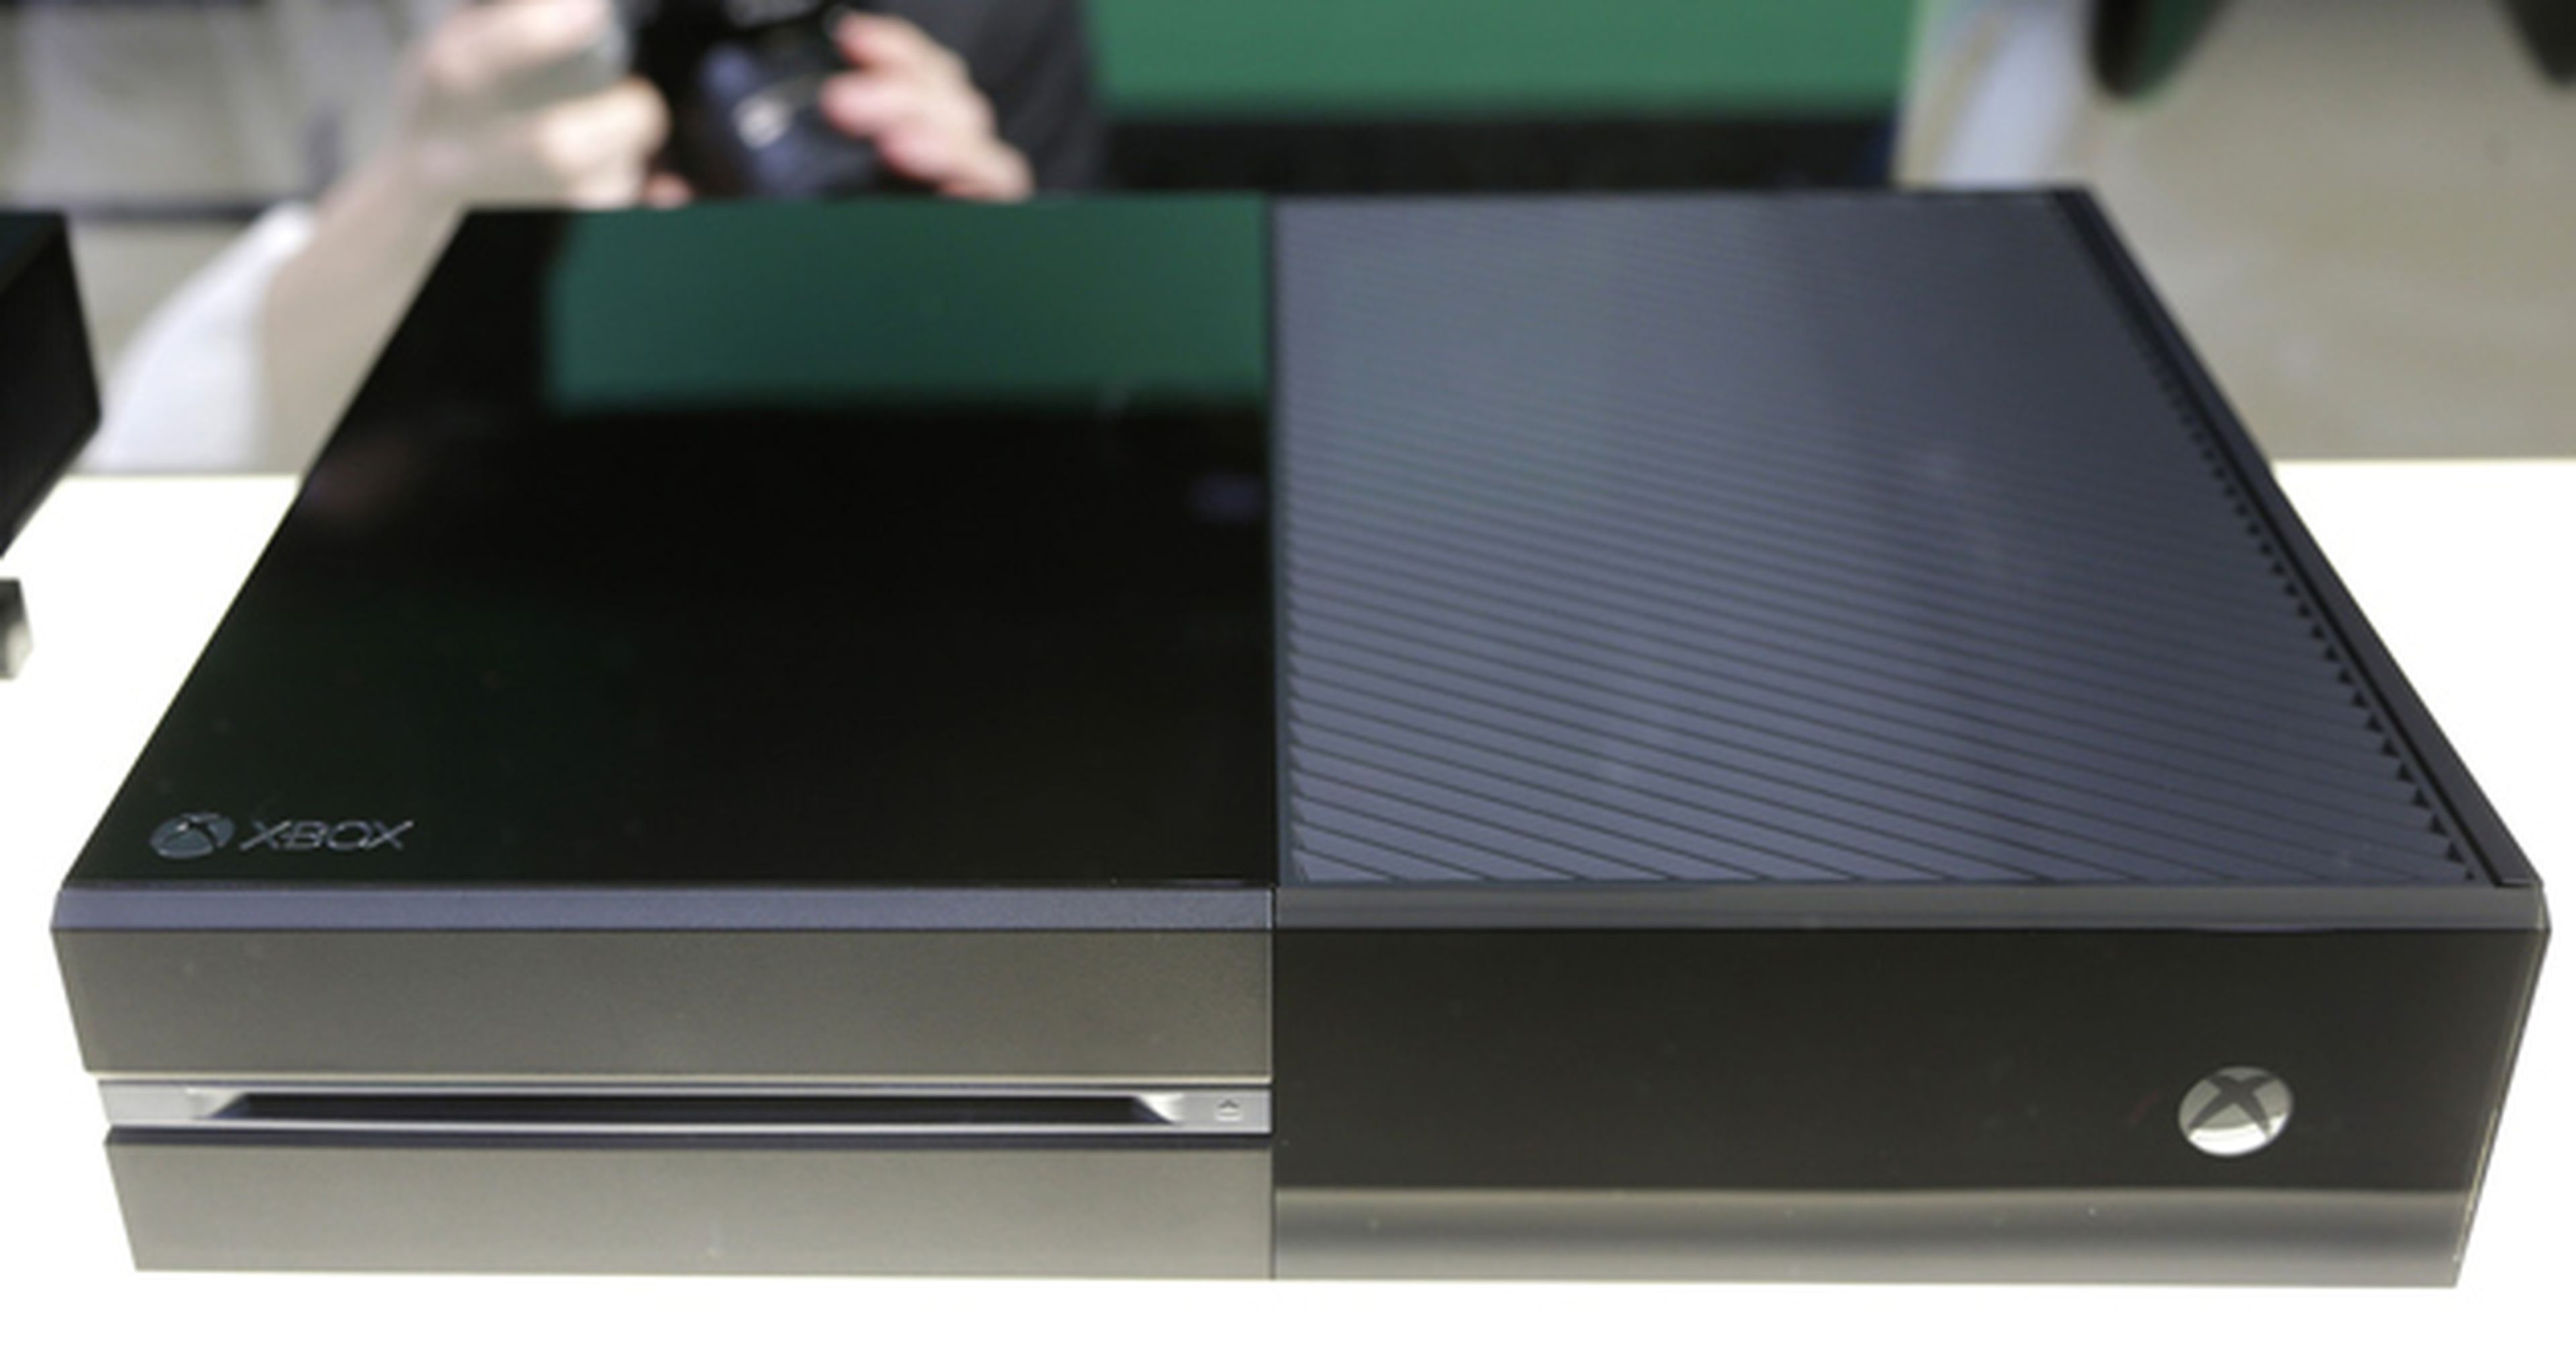 Las medidas de Xbox One y Kinect, al descubierto